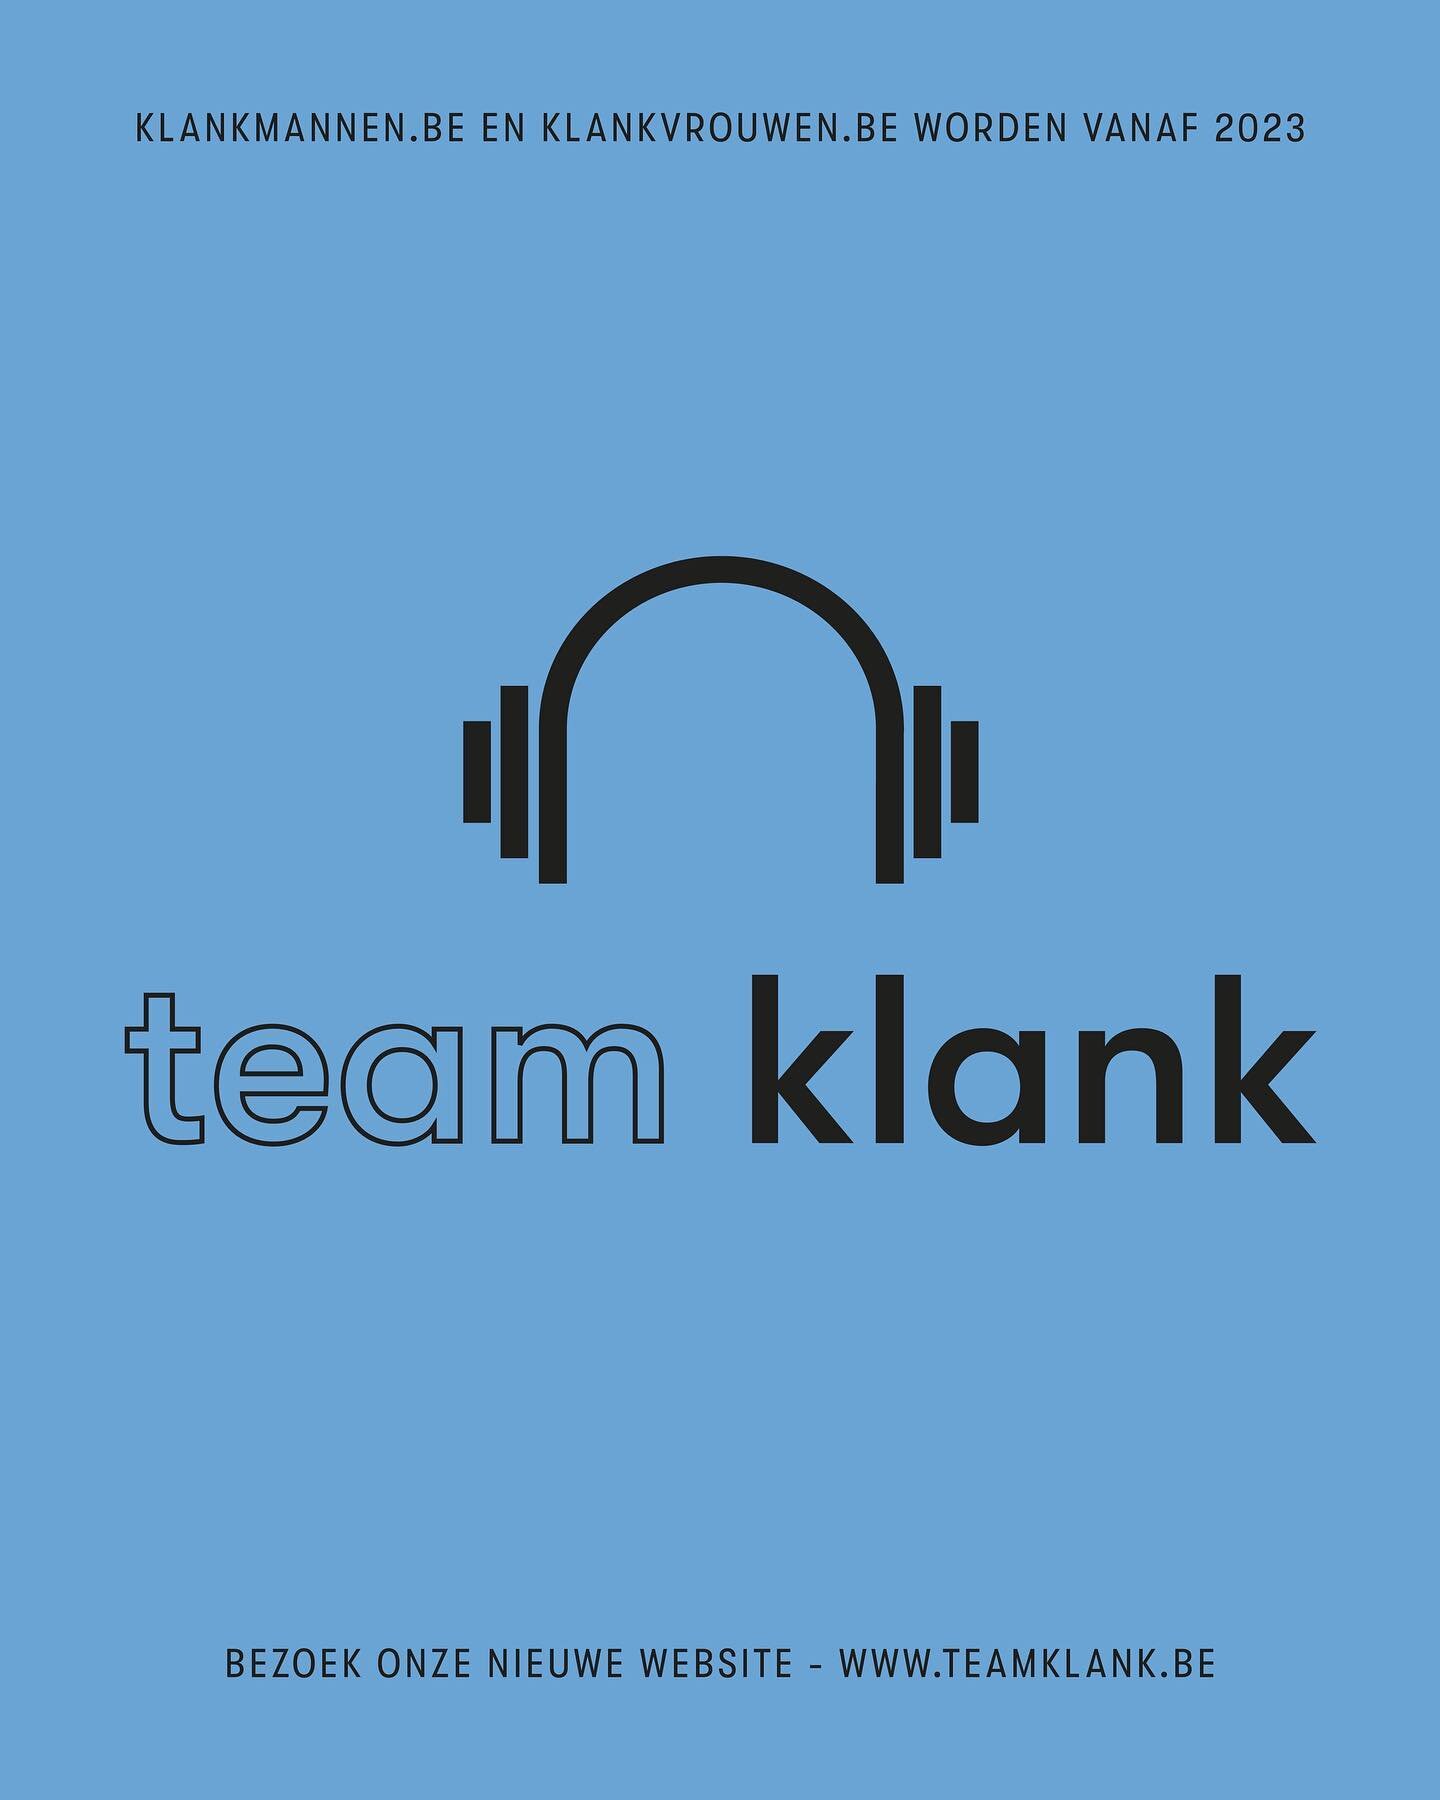 Klankmannen.be krijgt een nieuw jasje: TeamKlank. 🥳 Voor onze planning en boeking kan je nog steeds terecht bij Stefanie via het telefoonnummer en e-mailadres in de bio, of op onze gloednieuwe website www.teamklank.be #teamklank #klankmannen #klankv